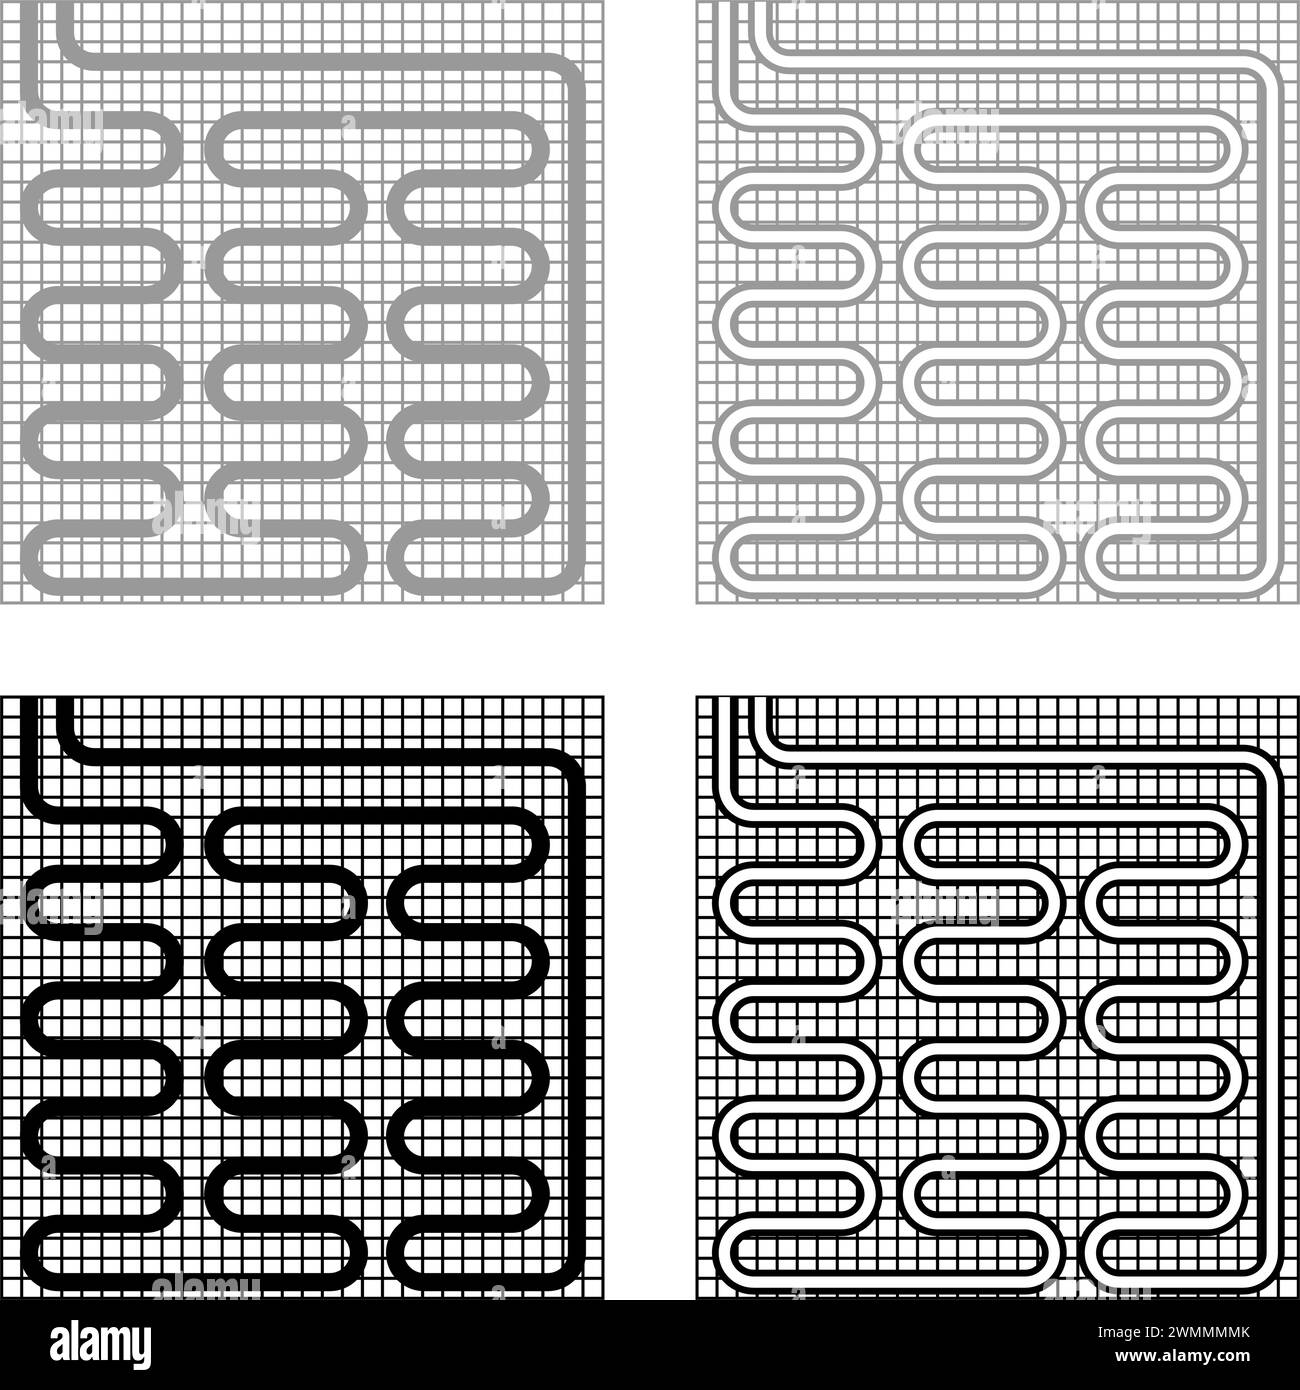 Elektrische Fußbodenheizung warm beheizt Set Symbol grau schwarz Farbe Vektor Illustration Bild einfache Vollfüllung Umrisslinie dünne flache Art Stock Vektor